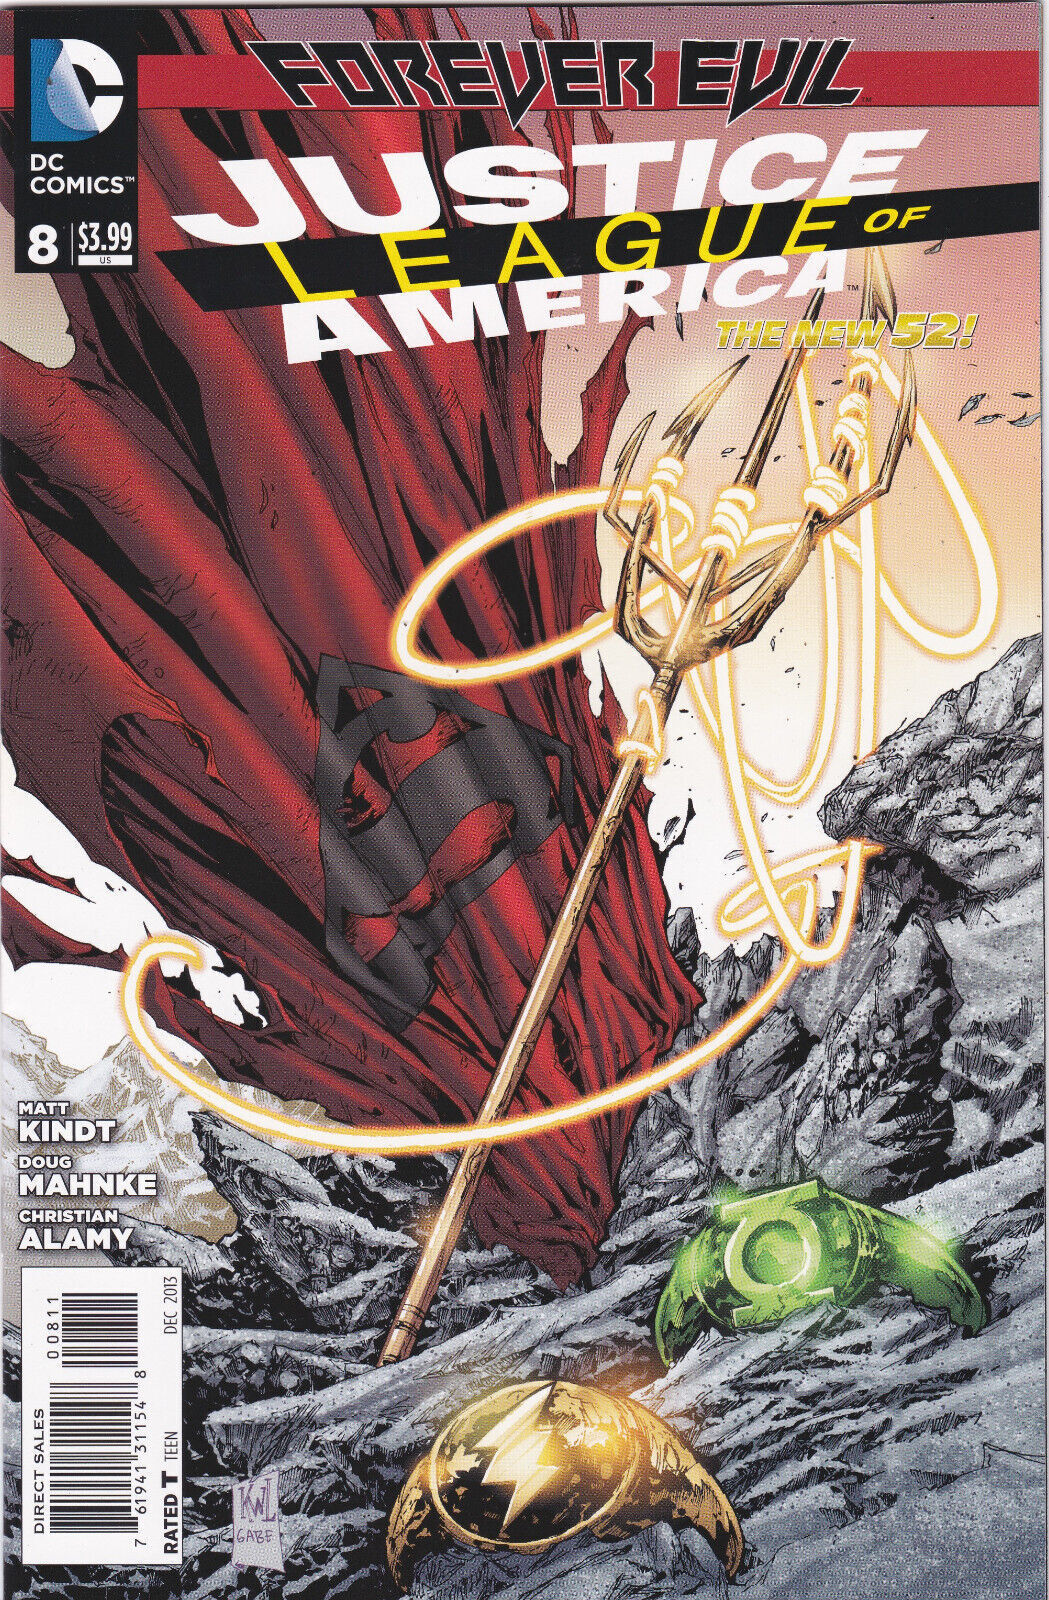 Justice League of America #8 Vol. 3 (2013-2014) DC Comics High Grade